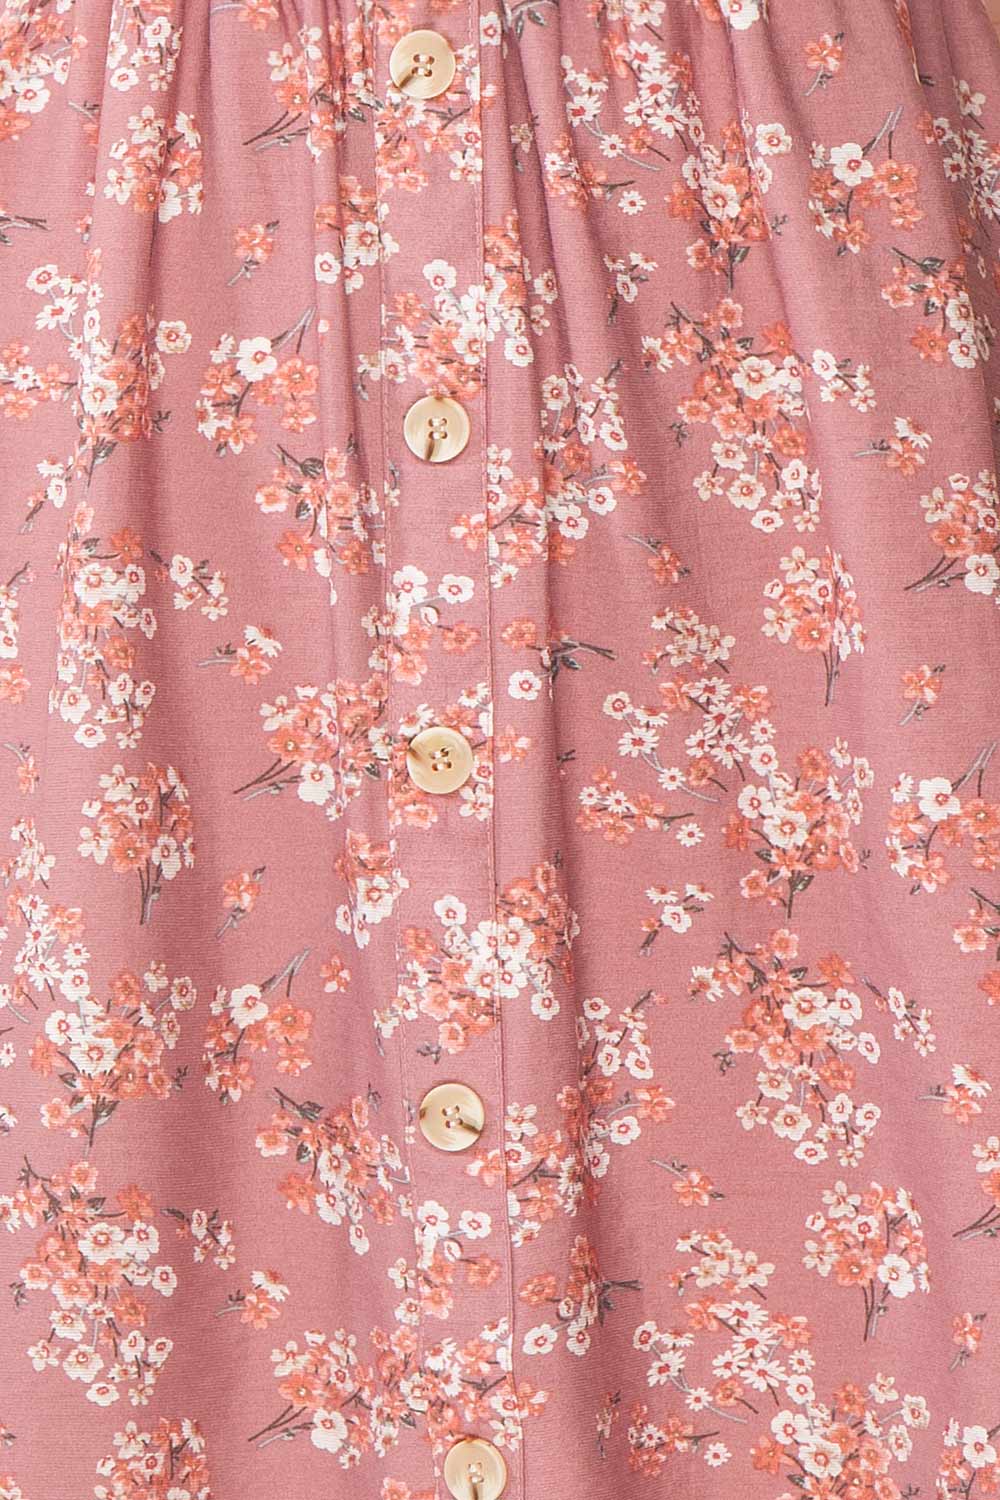 Eydis Mauve Lilac Pink Floral Short Dress | Boutique 1861 fabric